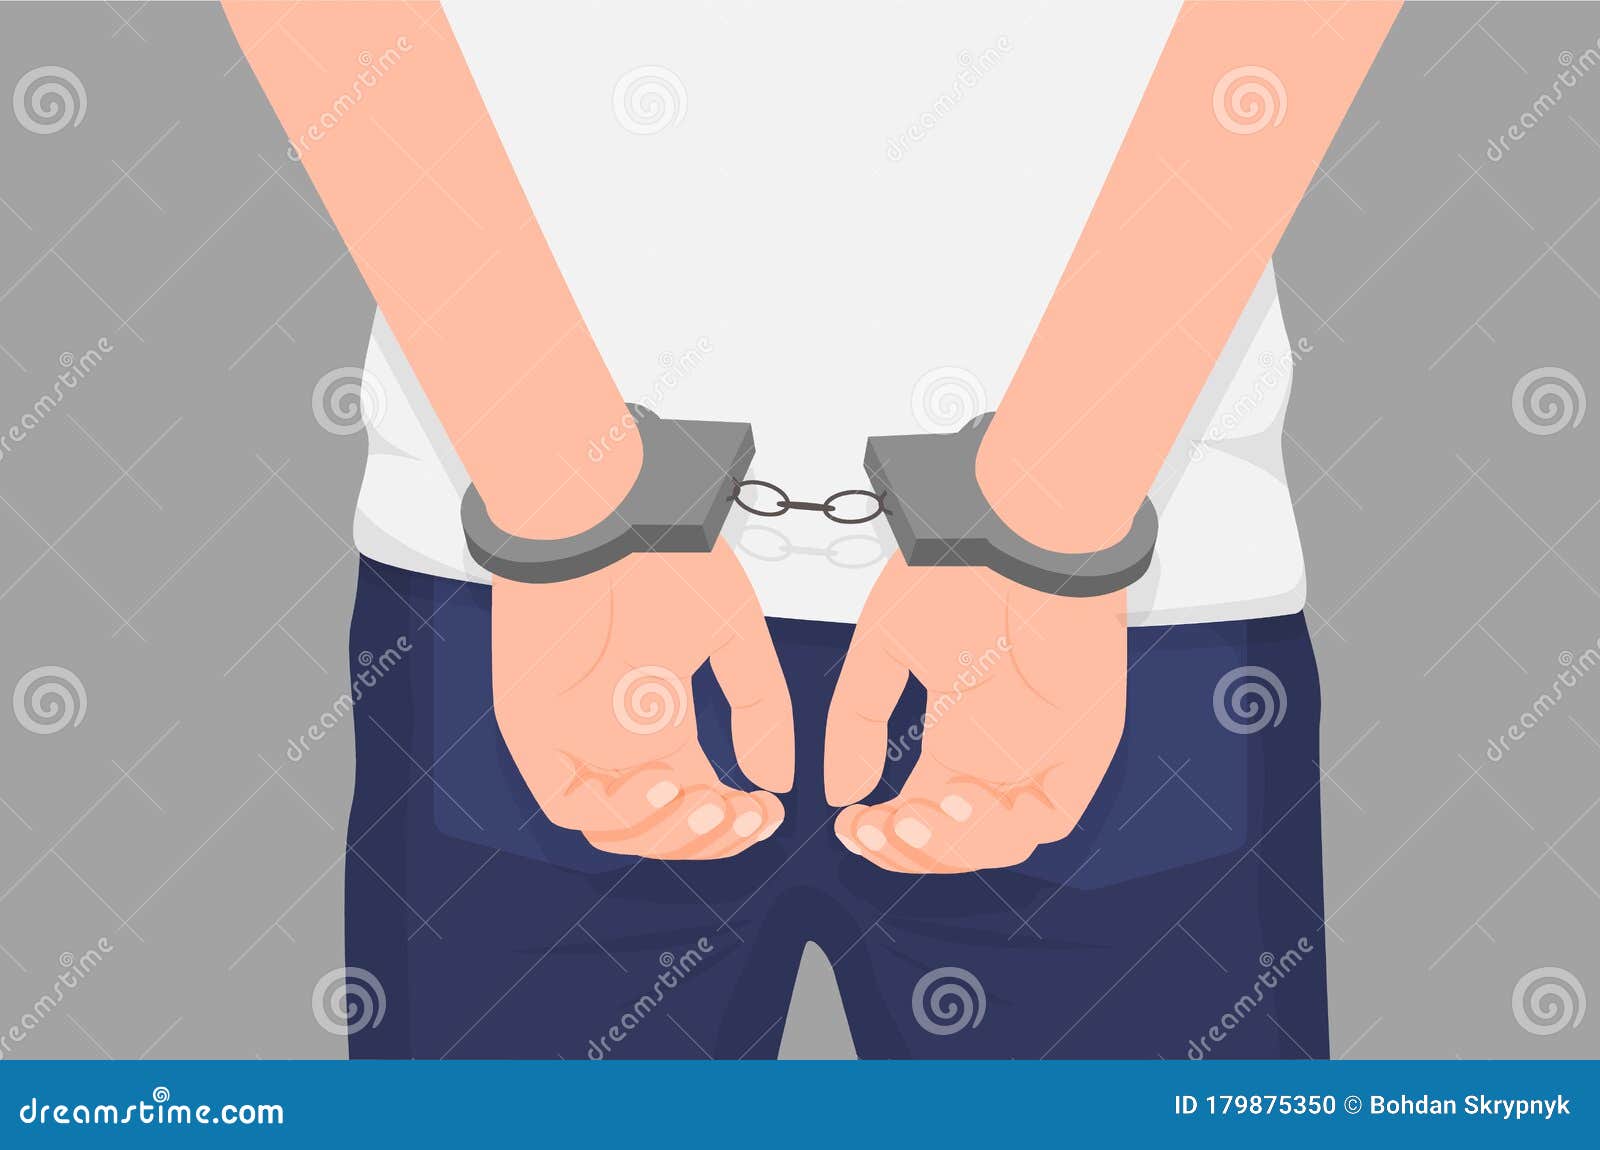 卡通犯罪者手铐 手铐 袖口 背部隔离在监狱中查出犯罪人向量例证 插画包括有被拘留者 逮捕